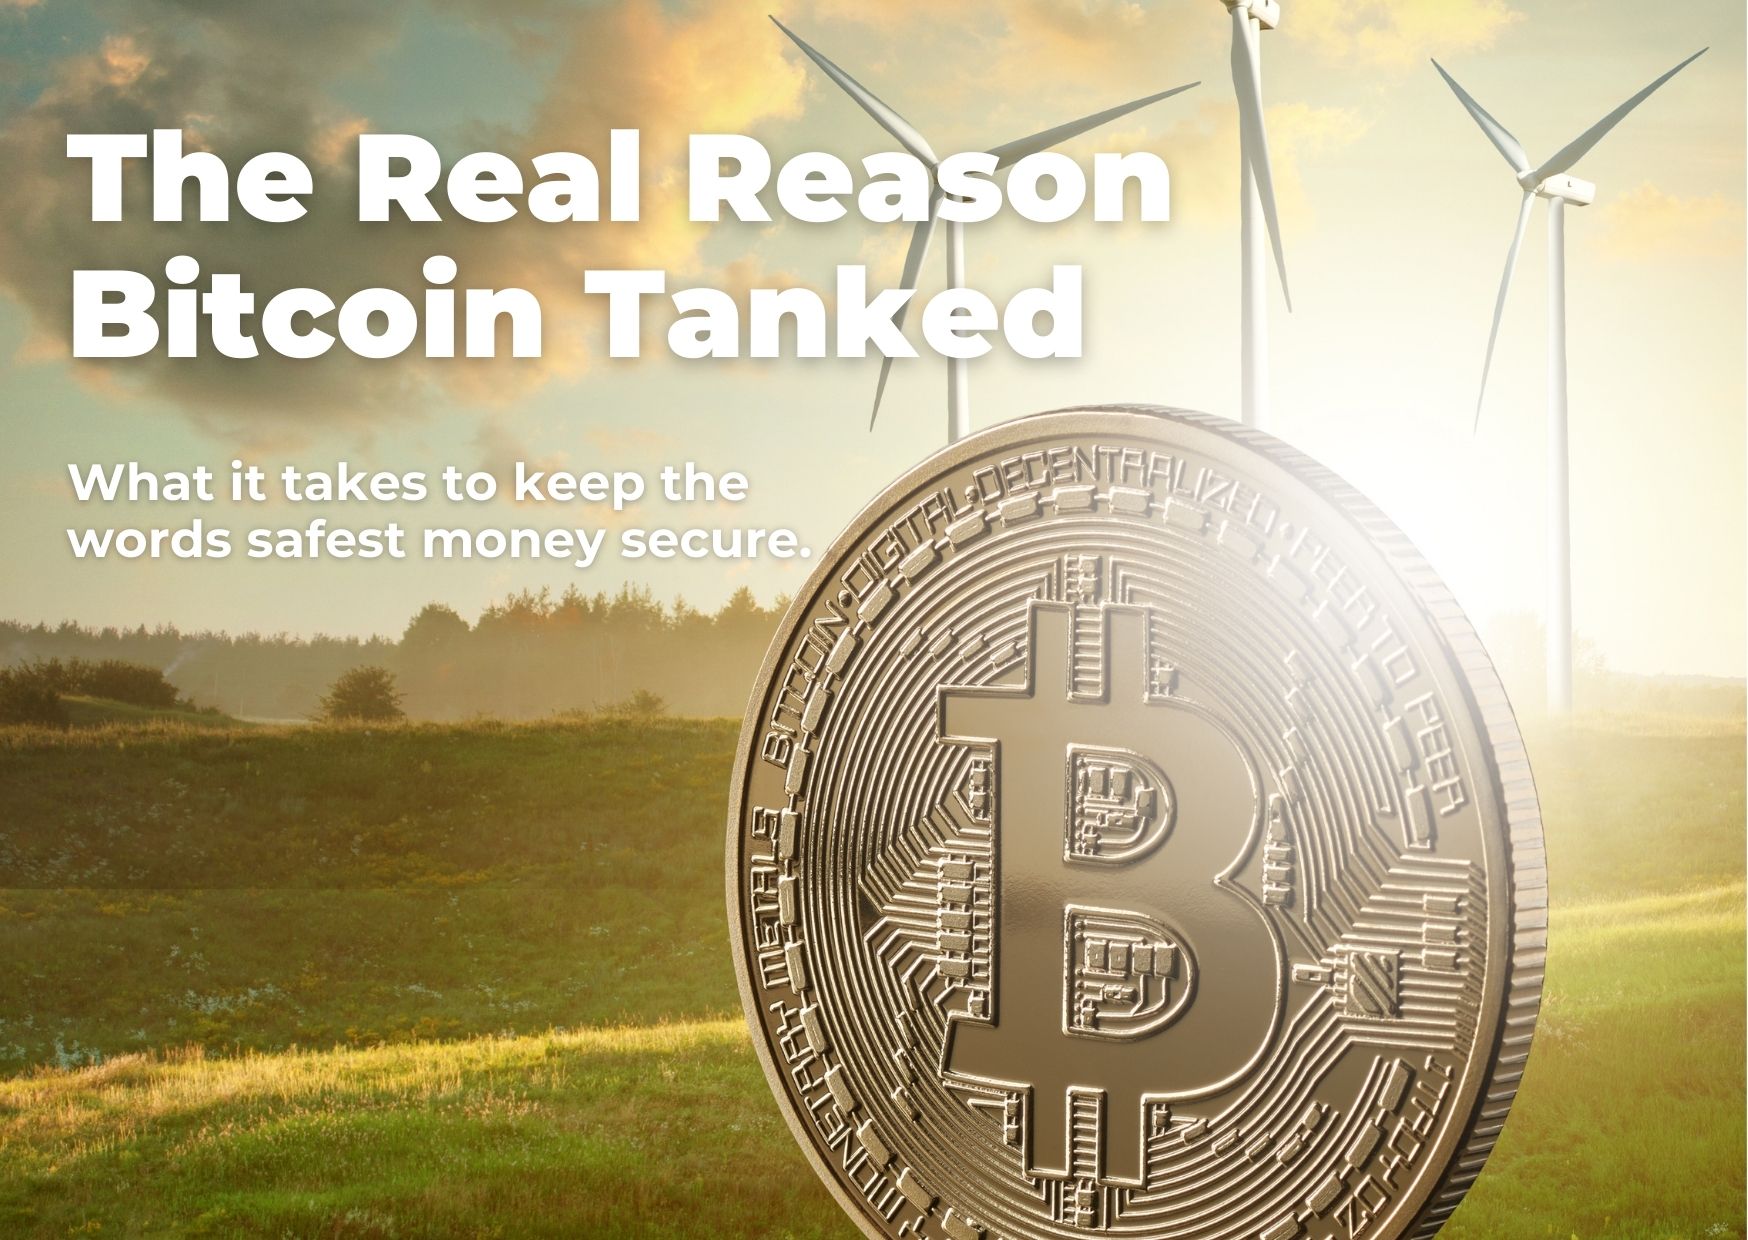 The Real Reason Bitcoin Tanked